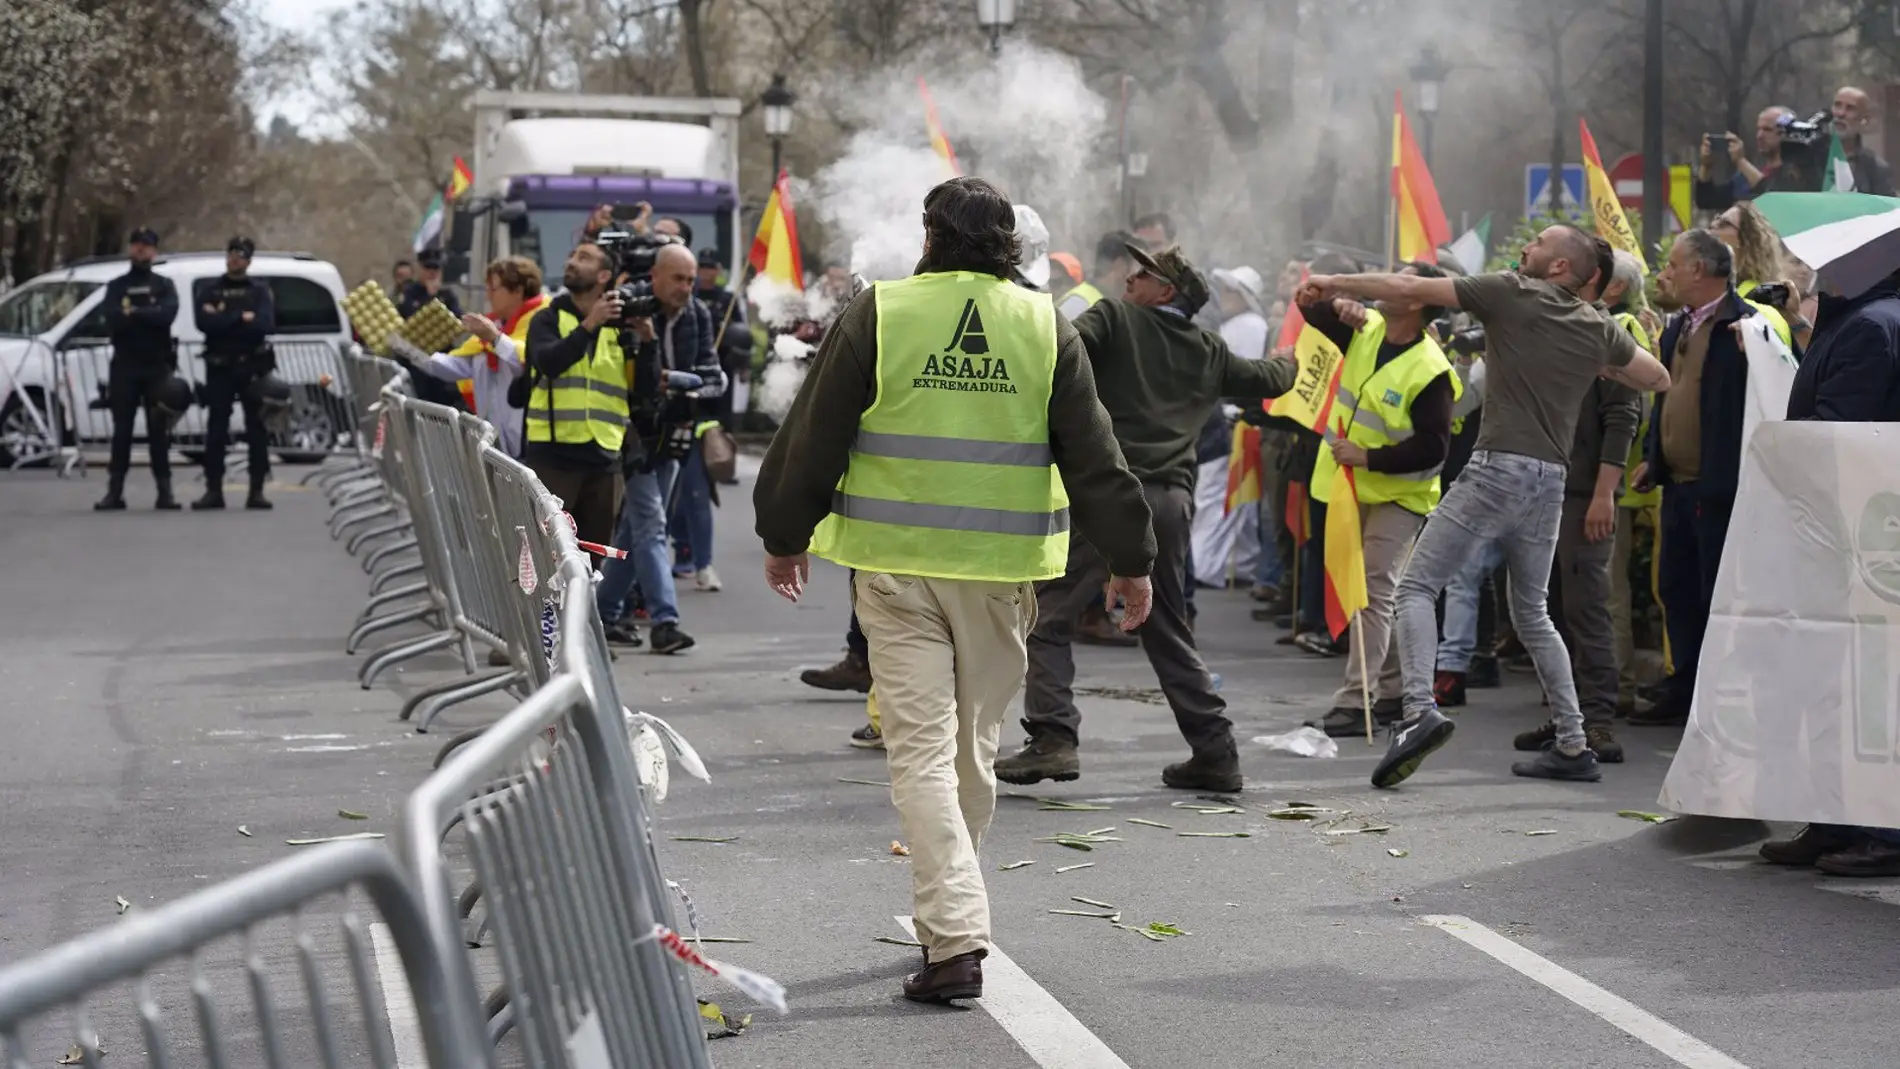 Miércoles de intensa movilización agraria, con "tensión" en Cáceres, cortes de carreteras y tractores en Madrid